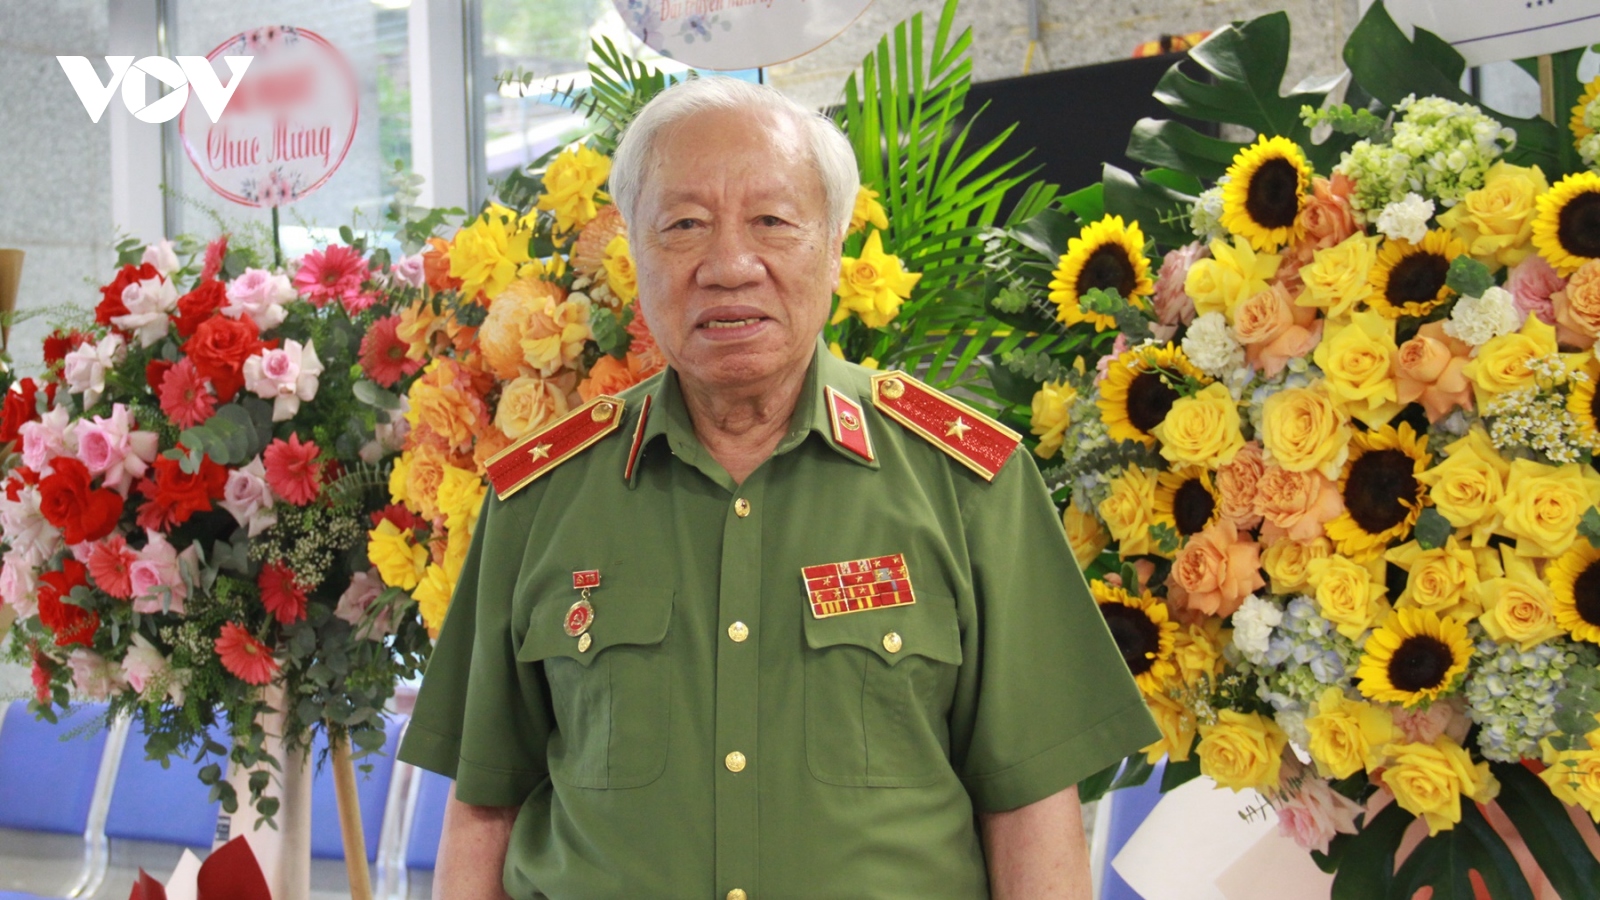 Thiếu tướng Phan Văn Lai: "Người công an phải luôn nghĩ đến quyền lợi của dân"